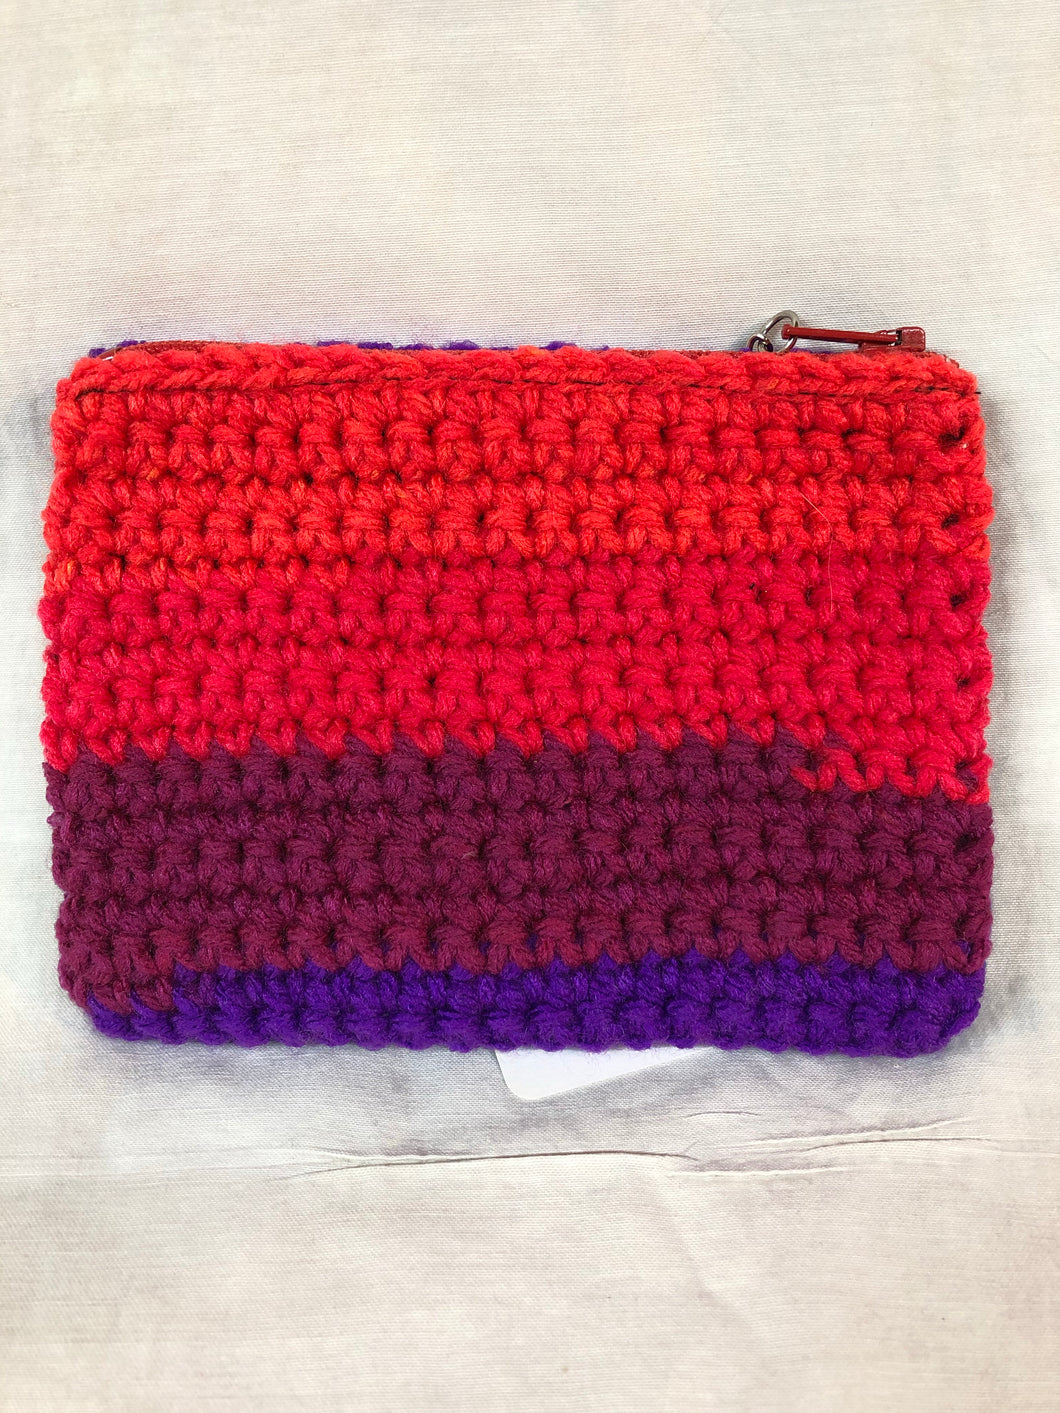 Crochet Mini Purse Small